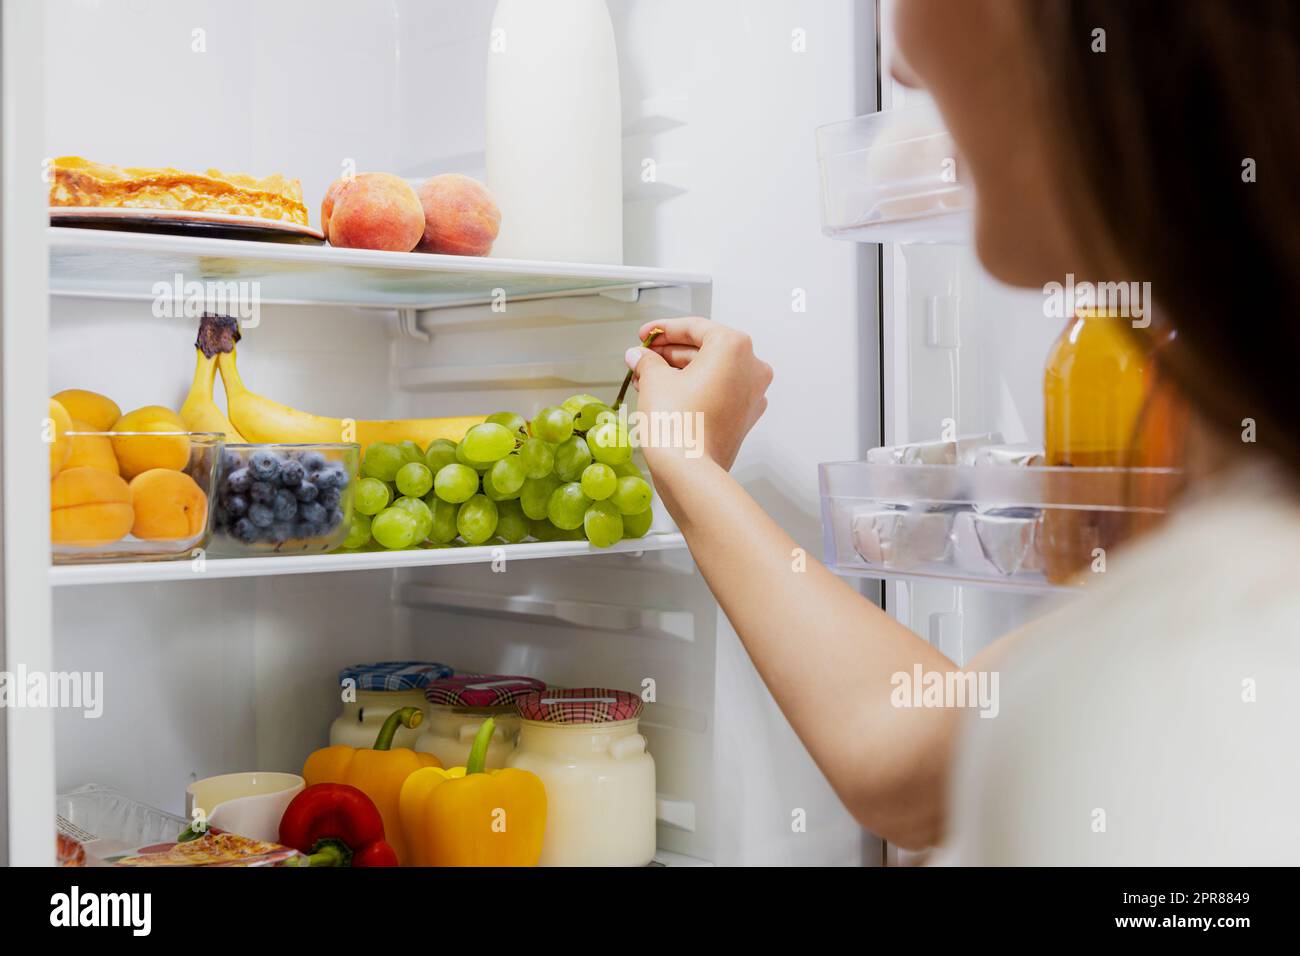 Una donna che prende o raccoglie un mazzo di uva dal frigorifero o dal frigorifero aperto Foto Stock